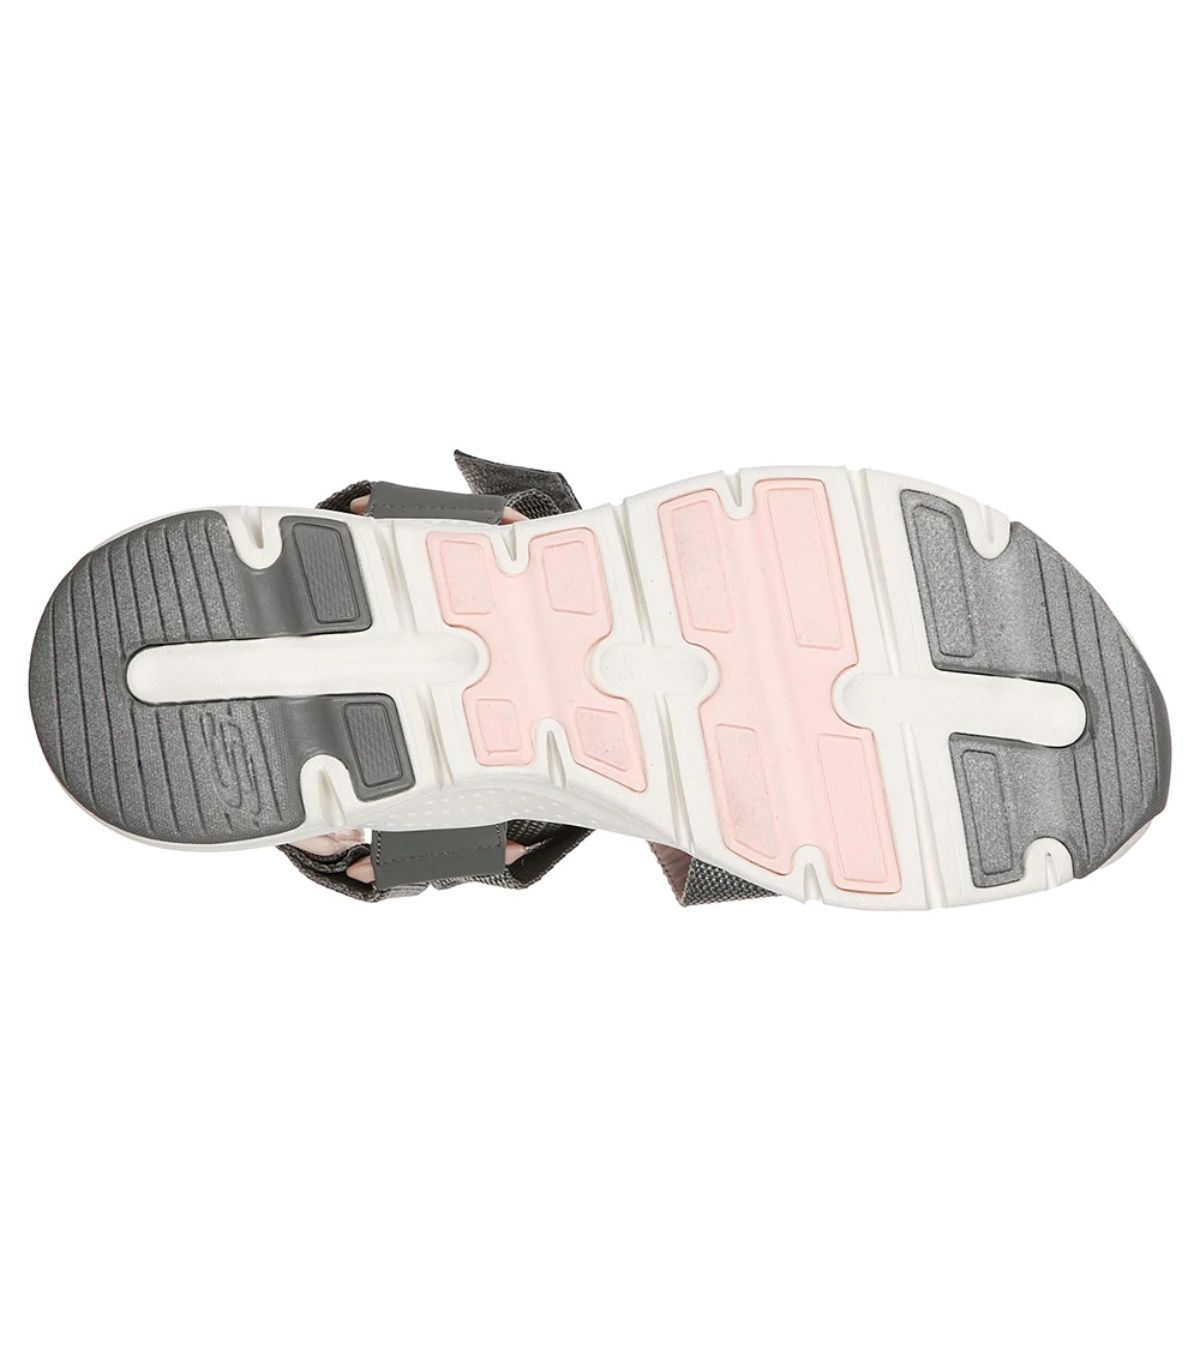 Skechers Arch Fit Pop Retro Mujer Gray Pink. Oferta y Comprar.